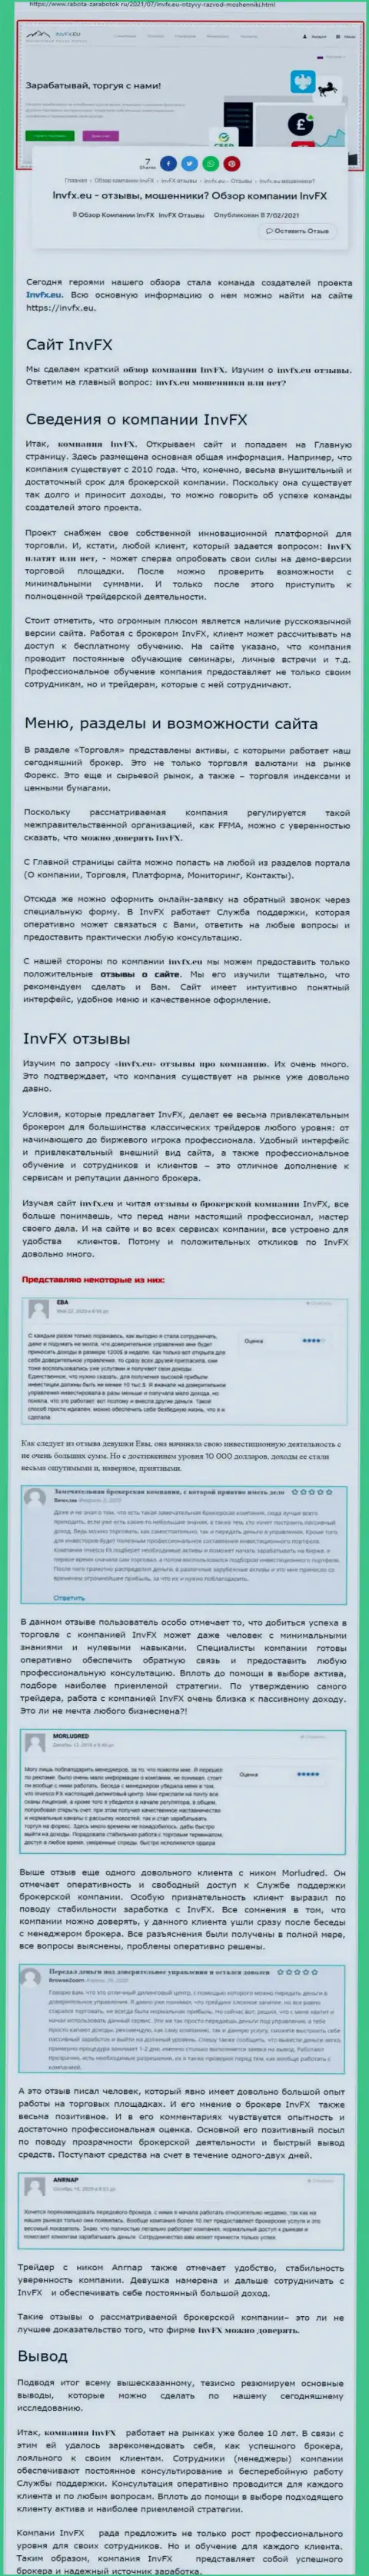 Материал веб-сайта Работа-Заработок Ру о форекс дилинговой компании ИНВФХ